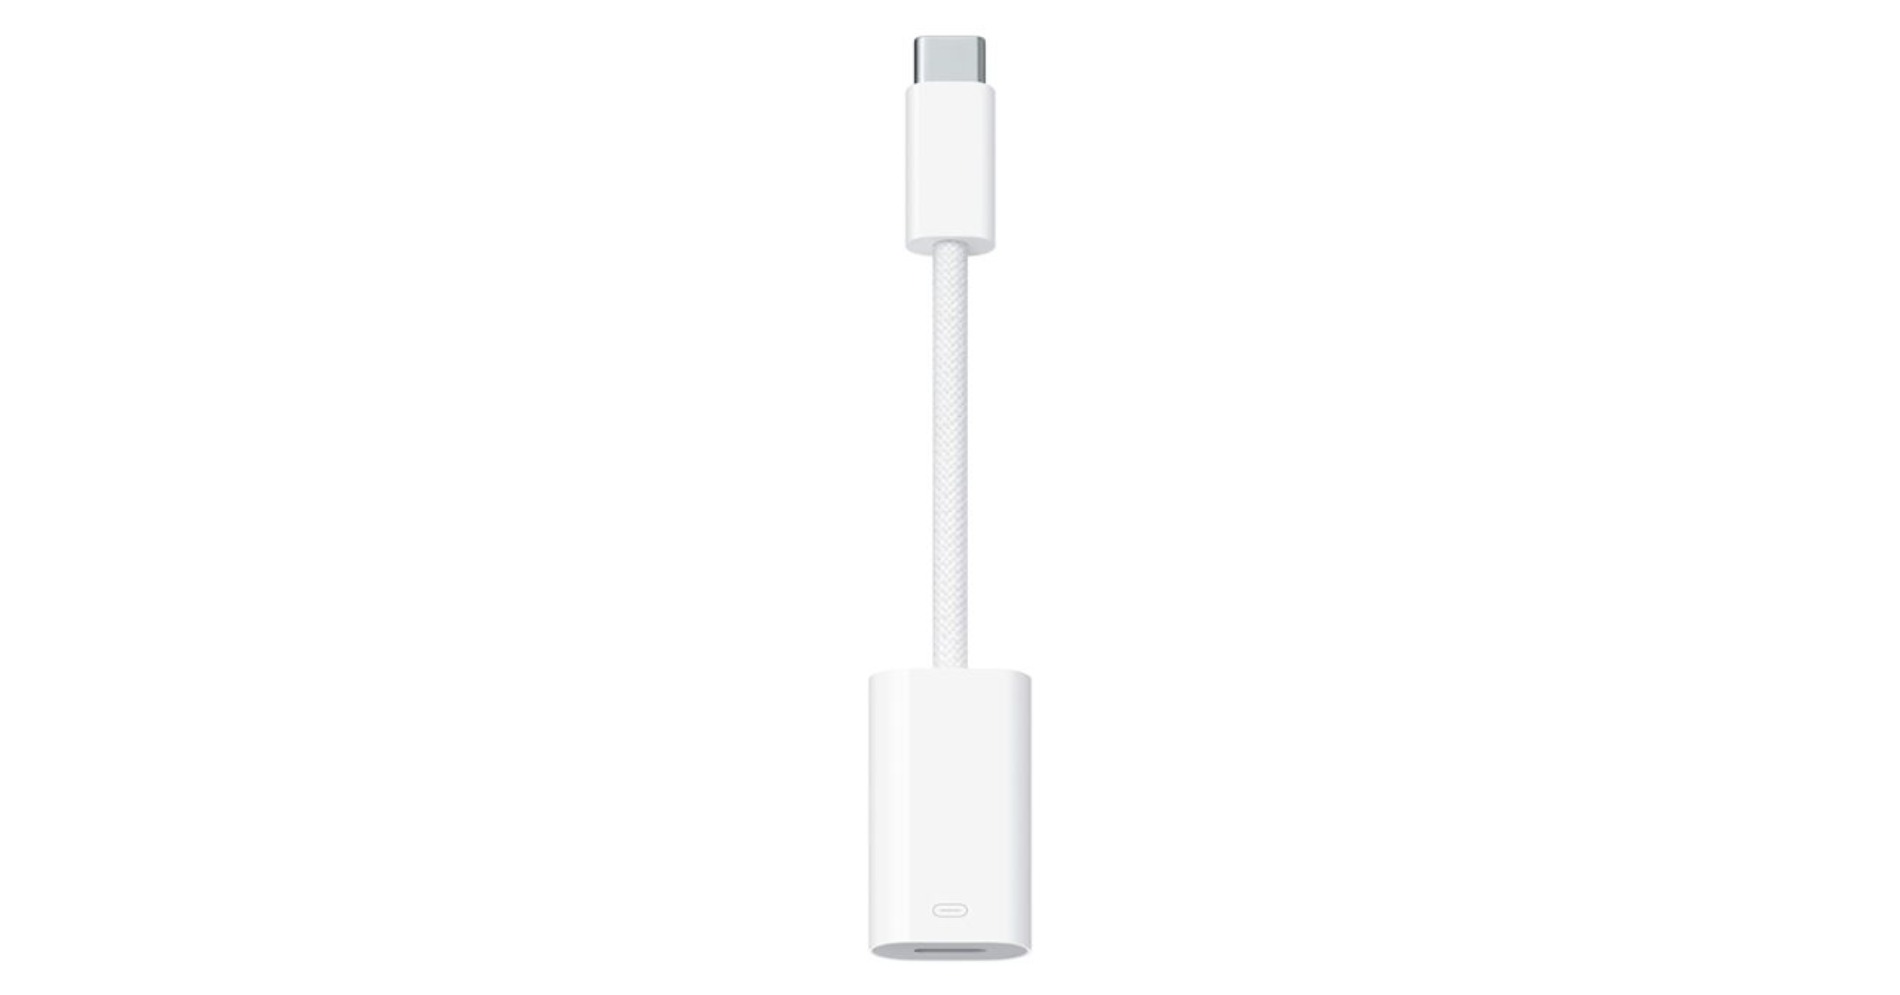 USB-C untuk iPhone, iPad, dan 